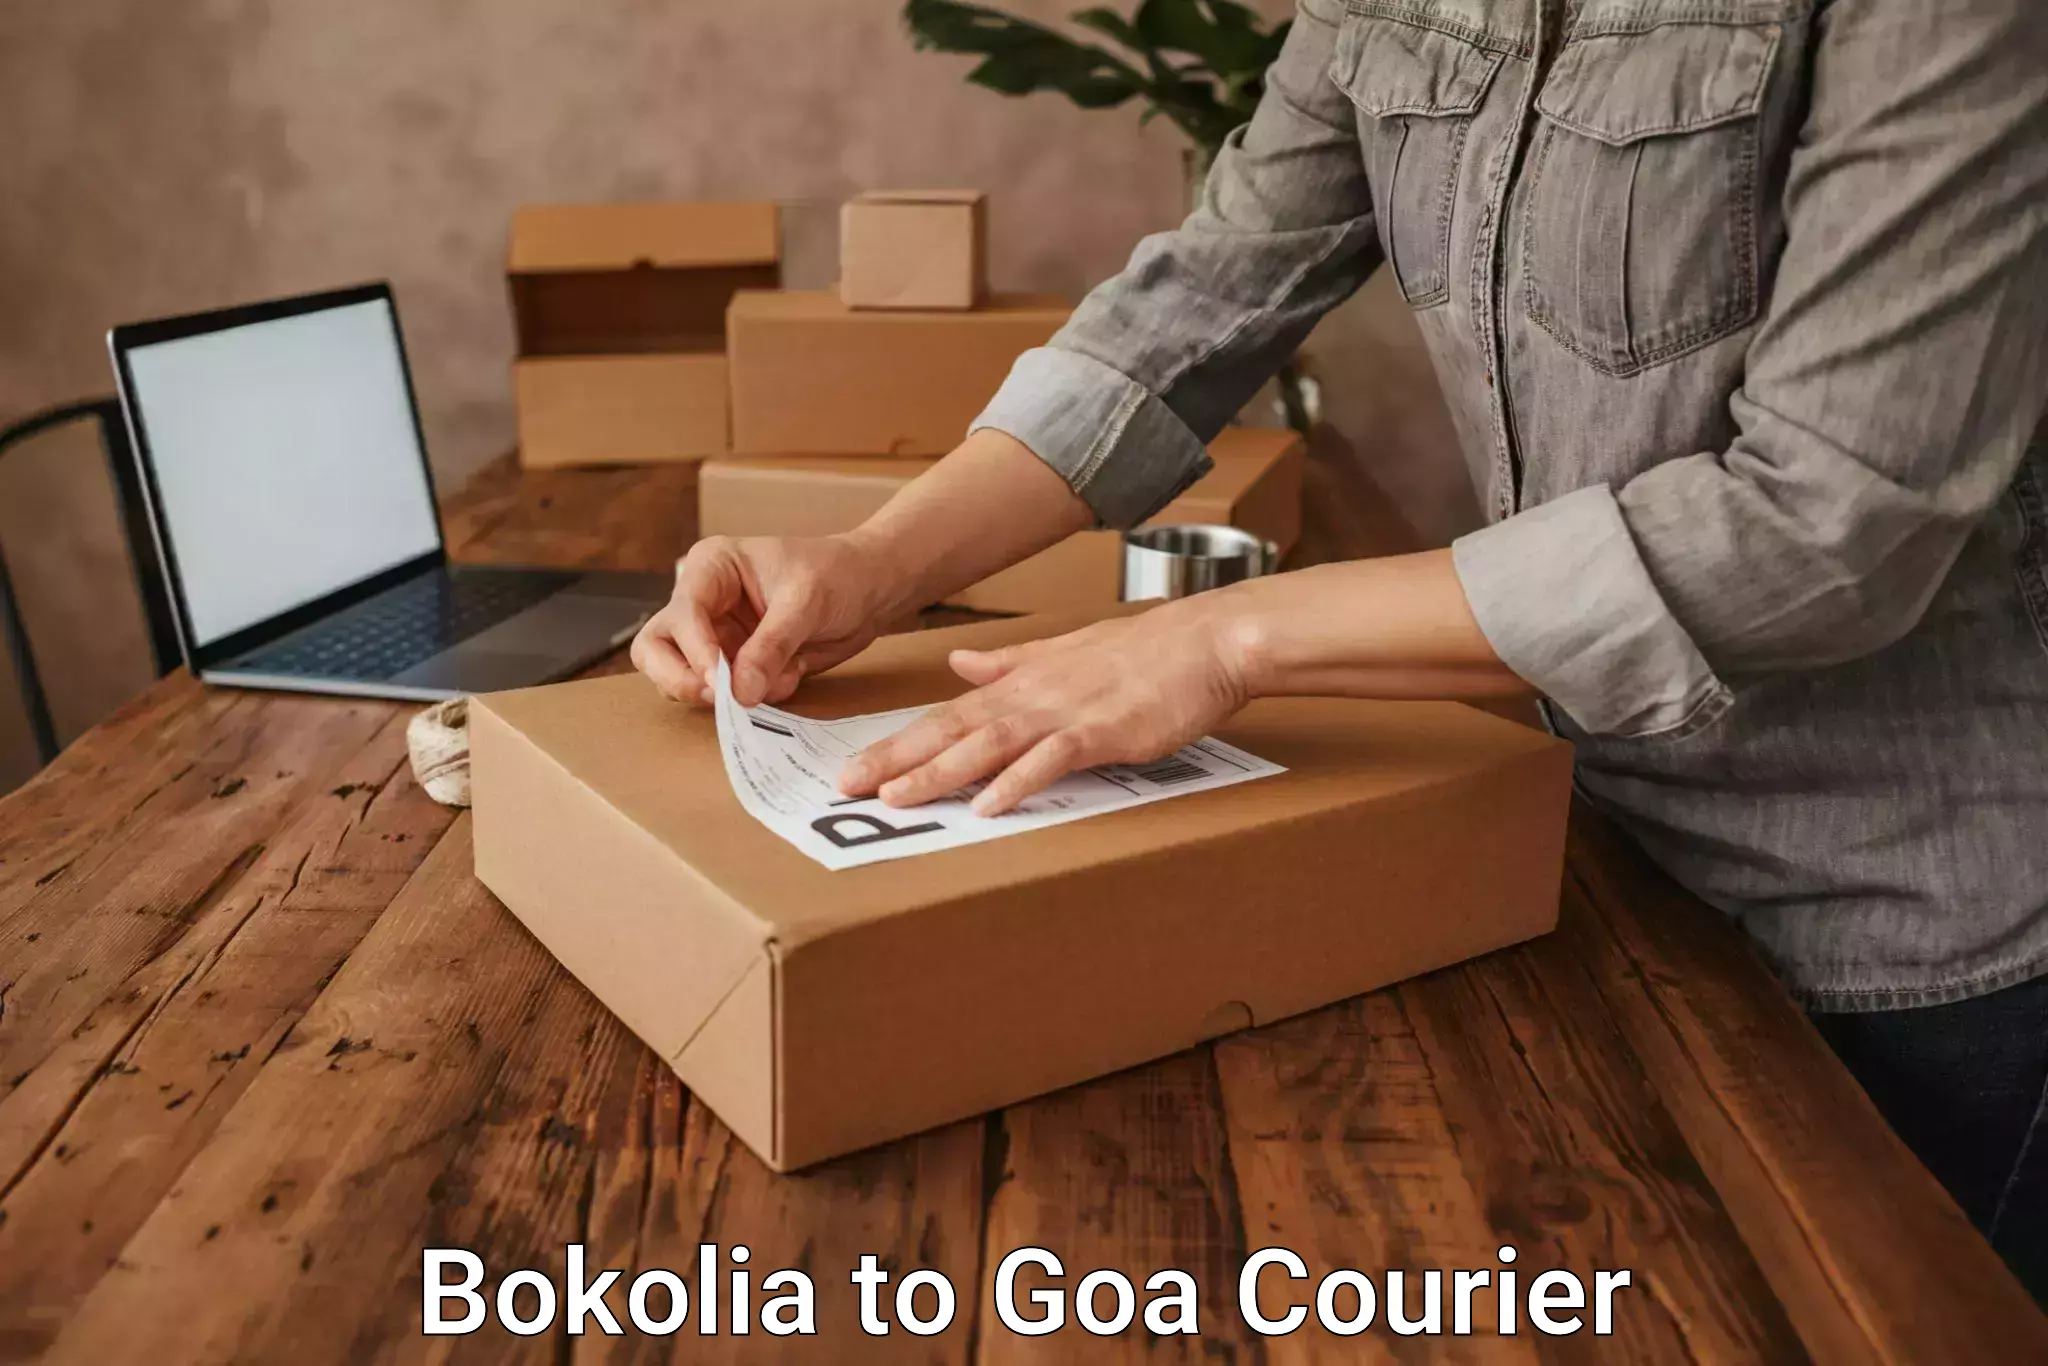 Urban courier service Bokolia to NIT Goa